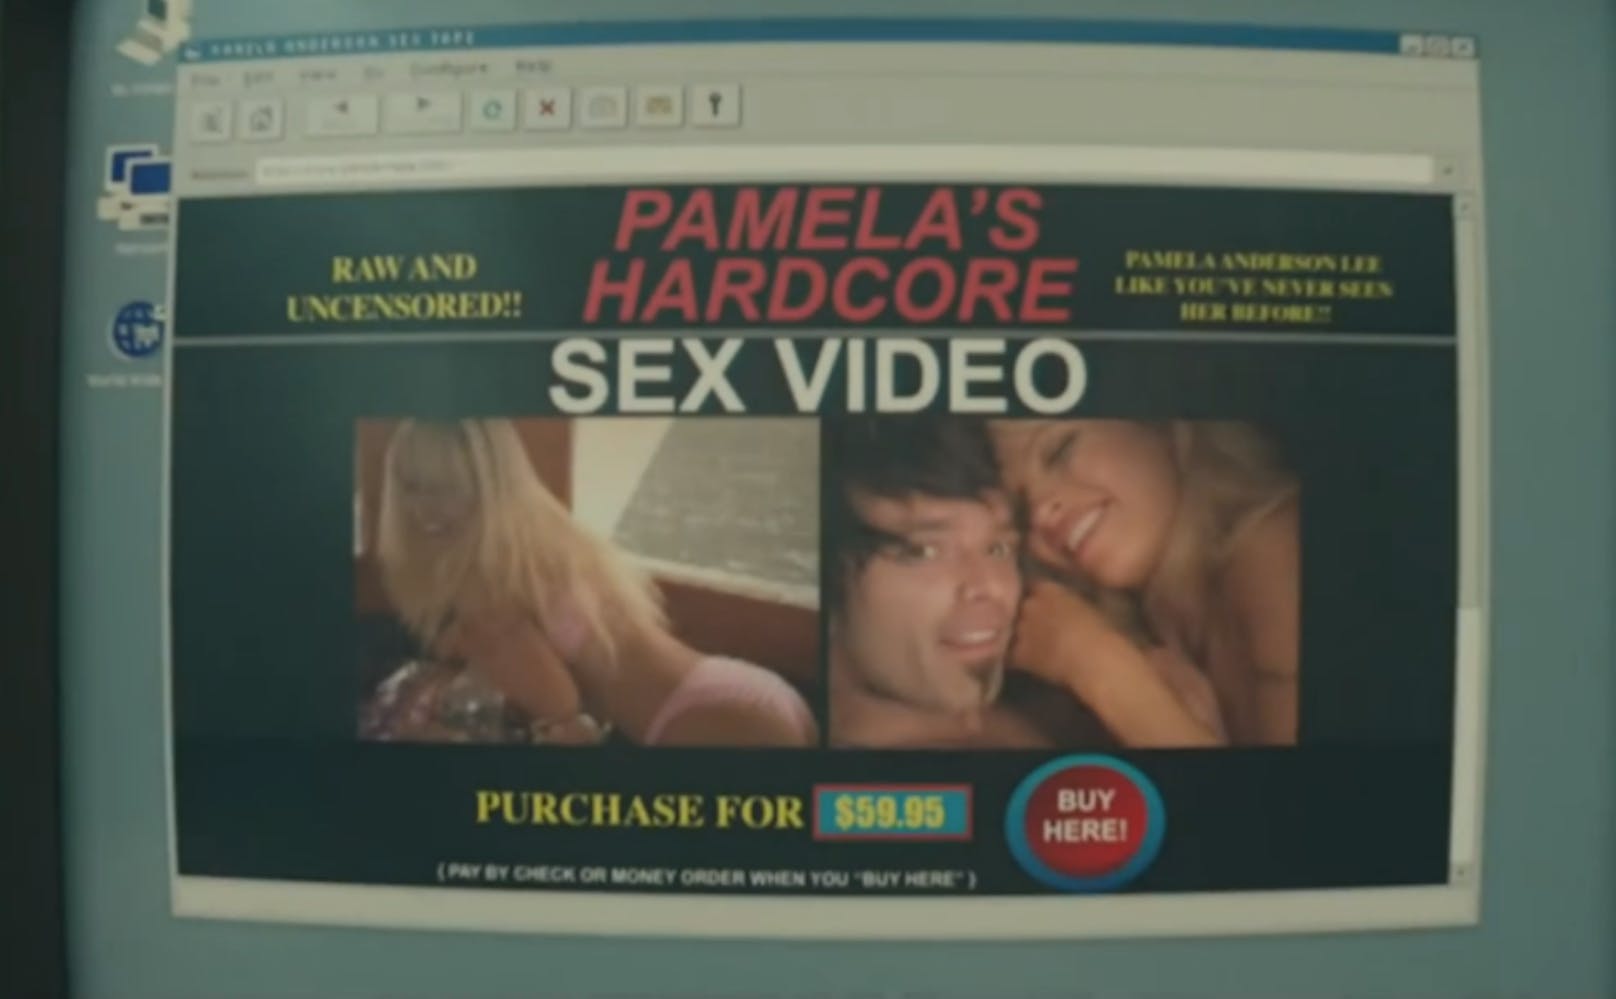 Schauspieler drehten Sexvideo von Pamela Anderson nach